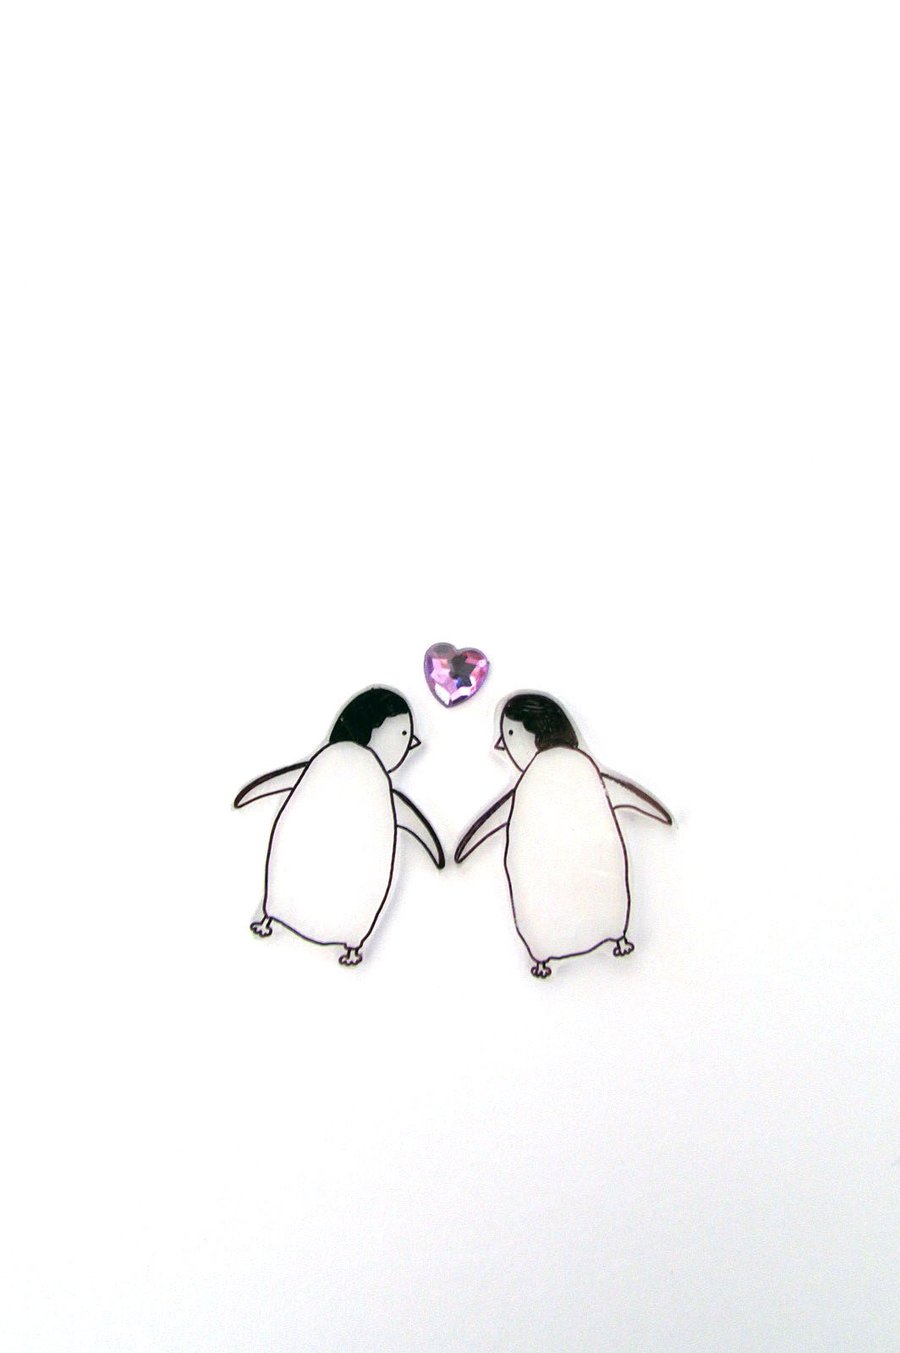 penguins in love - handmade card